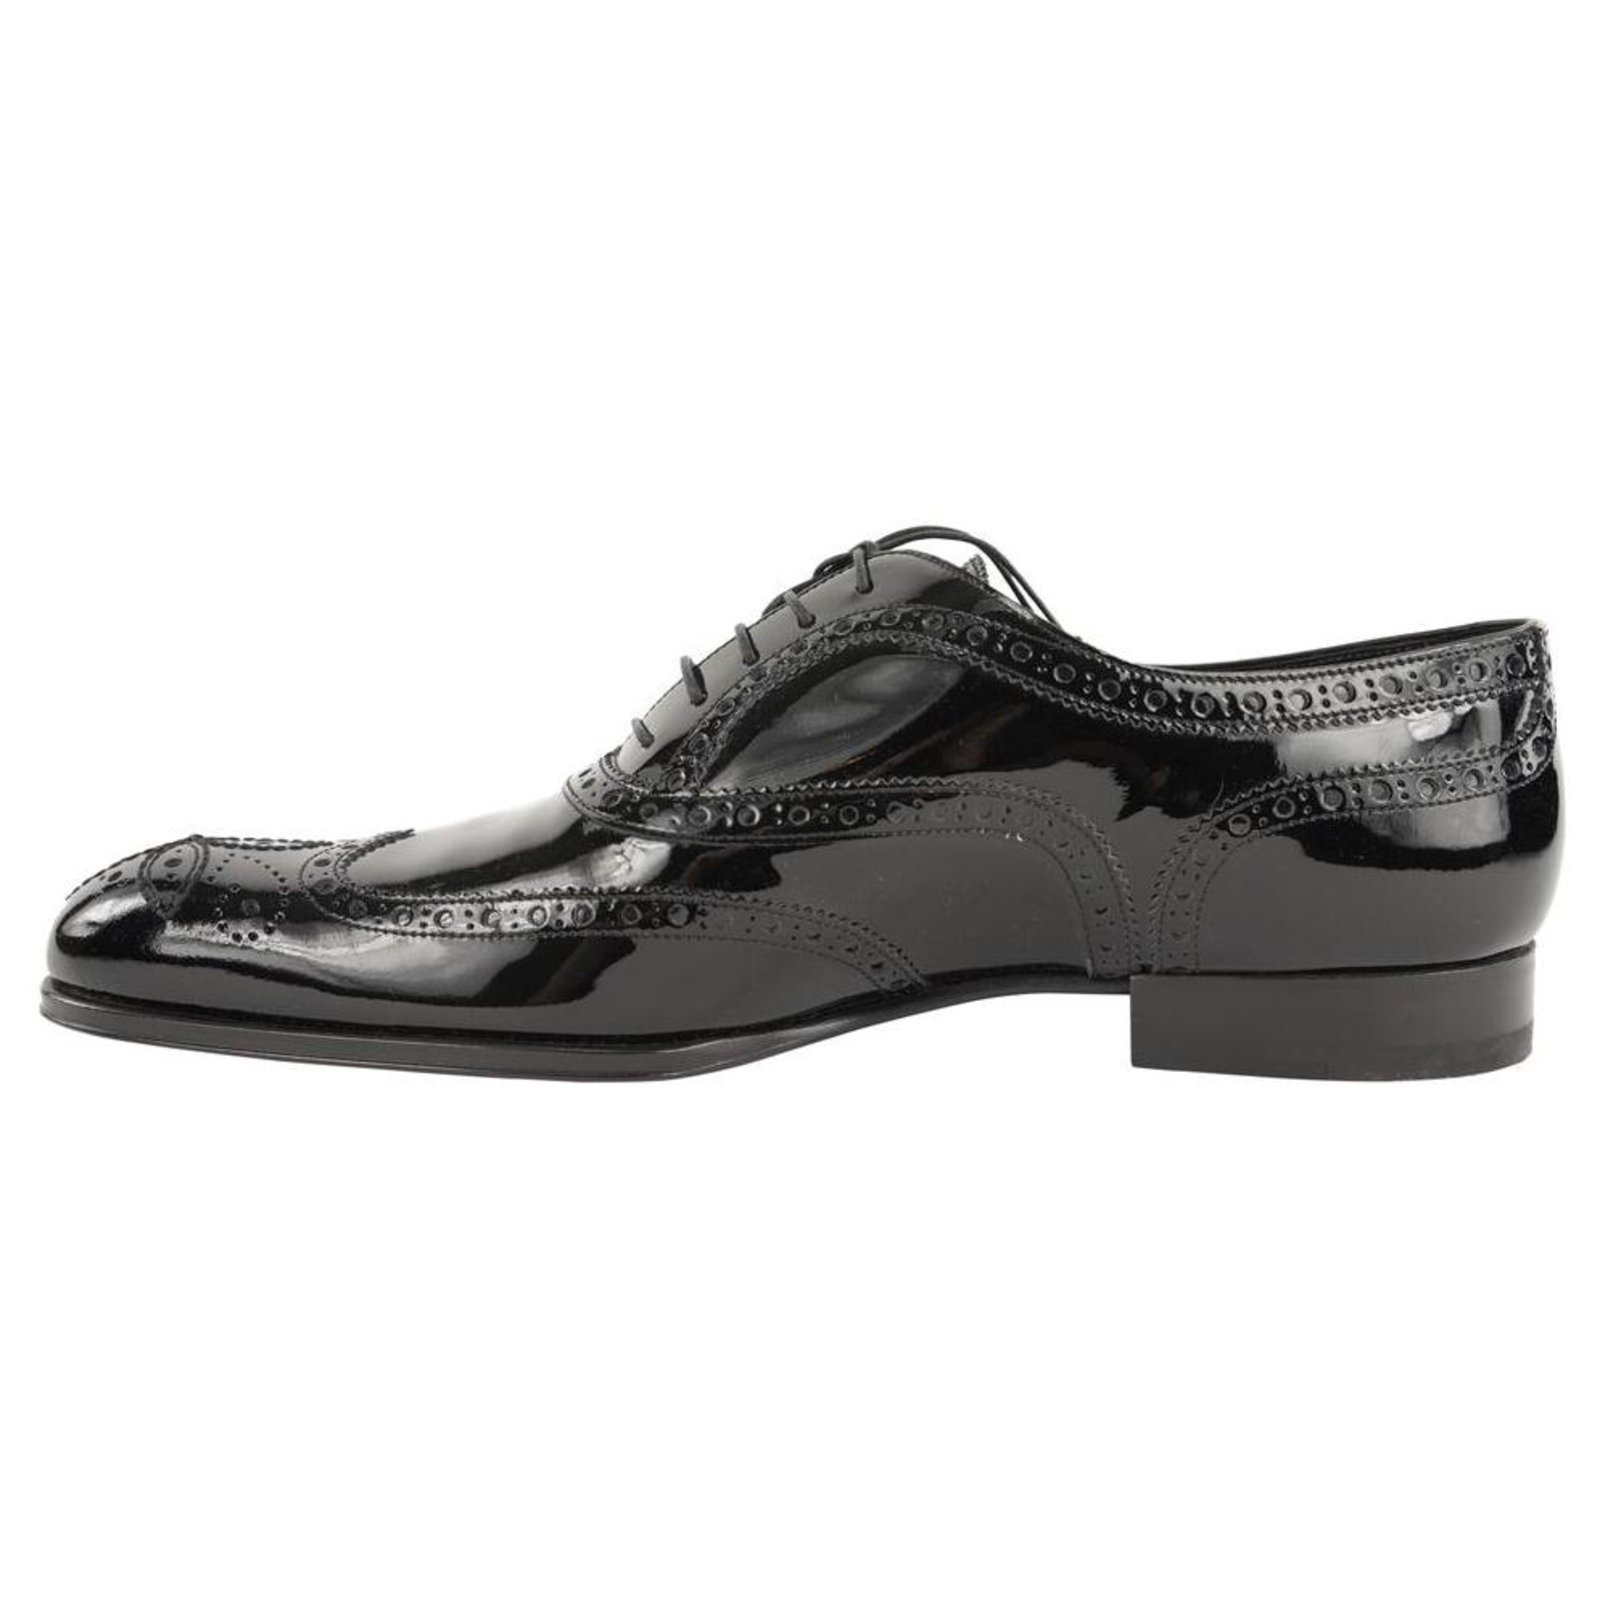 Louis Vuitton Men's Black Patent Derby Oxford Wing Tip Dress Shoes